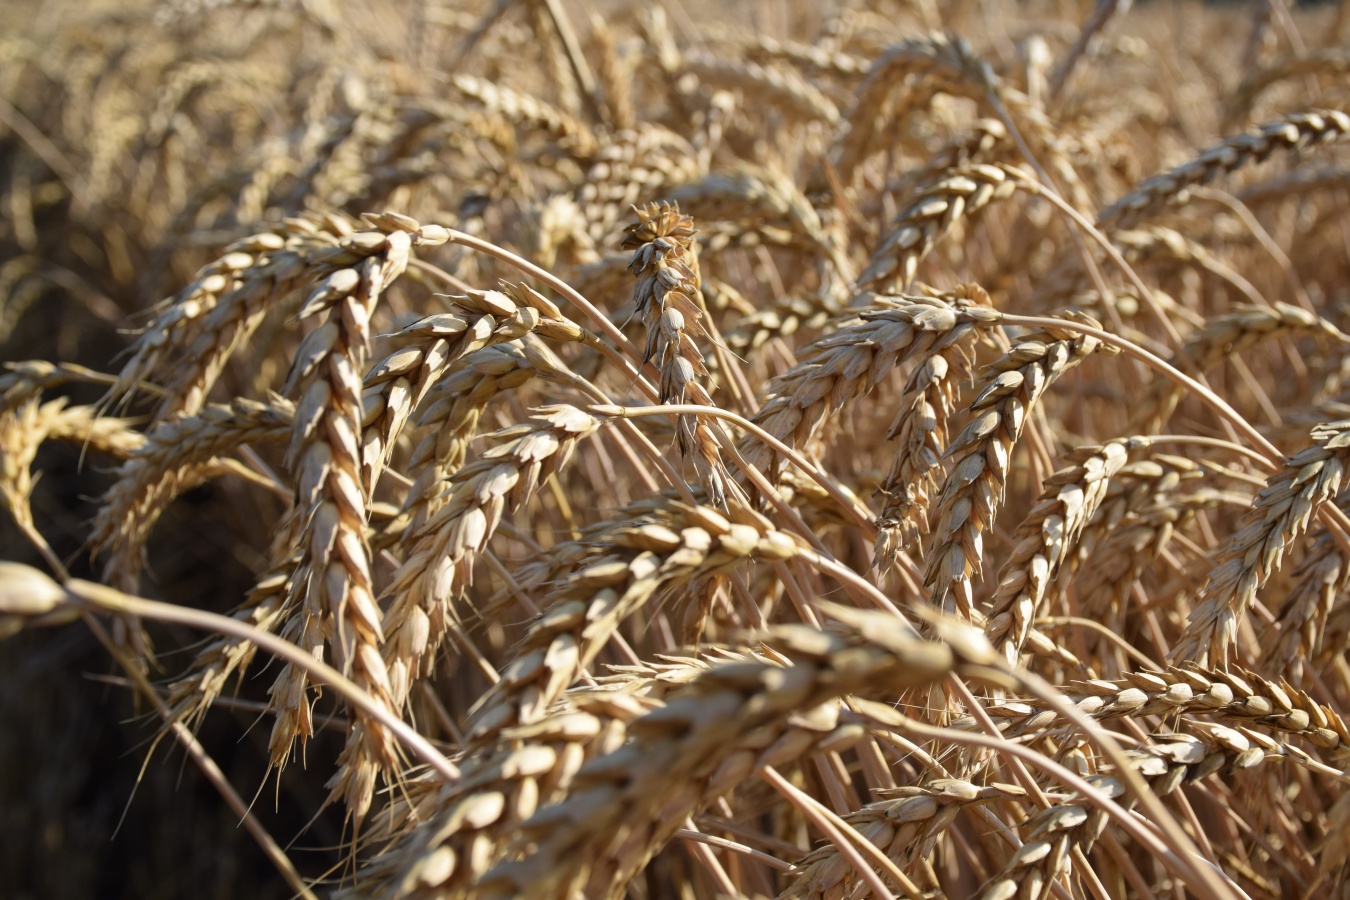 Озимая пшеница сорта АХМАТ: купить семена от производителя - оптовые цены